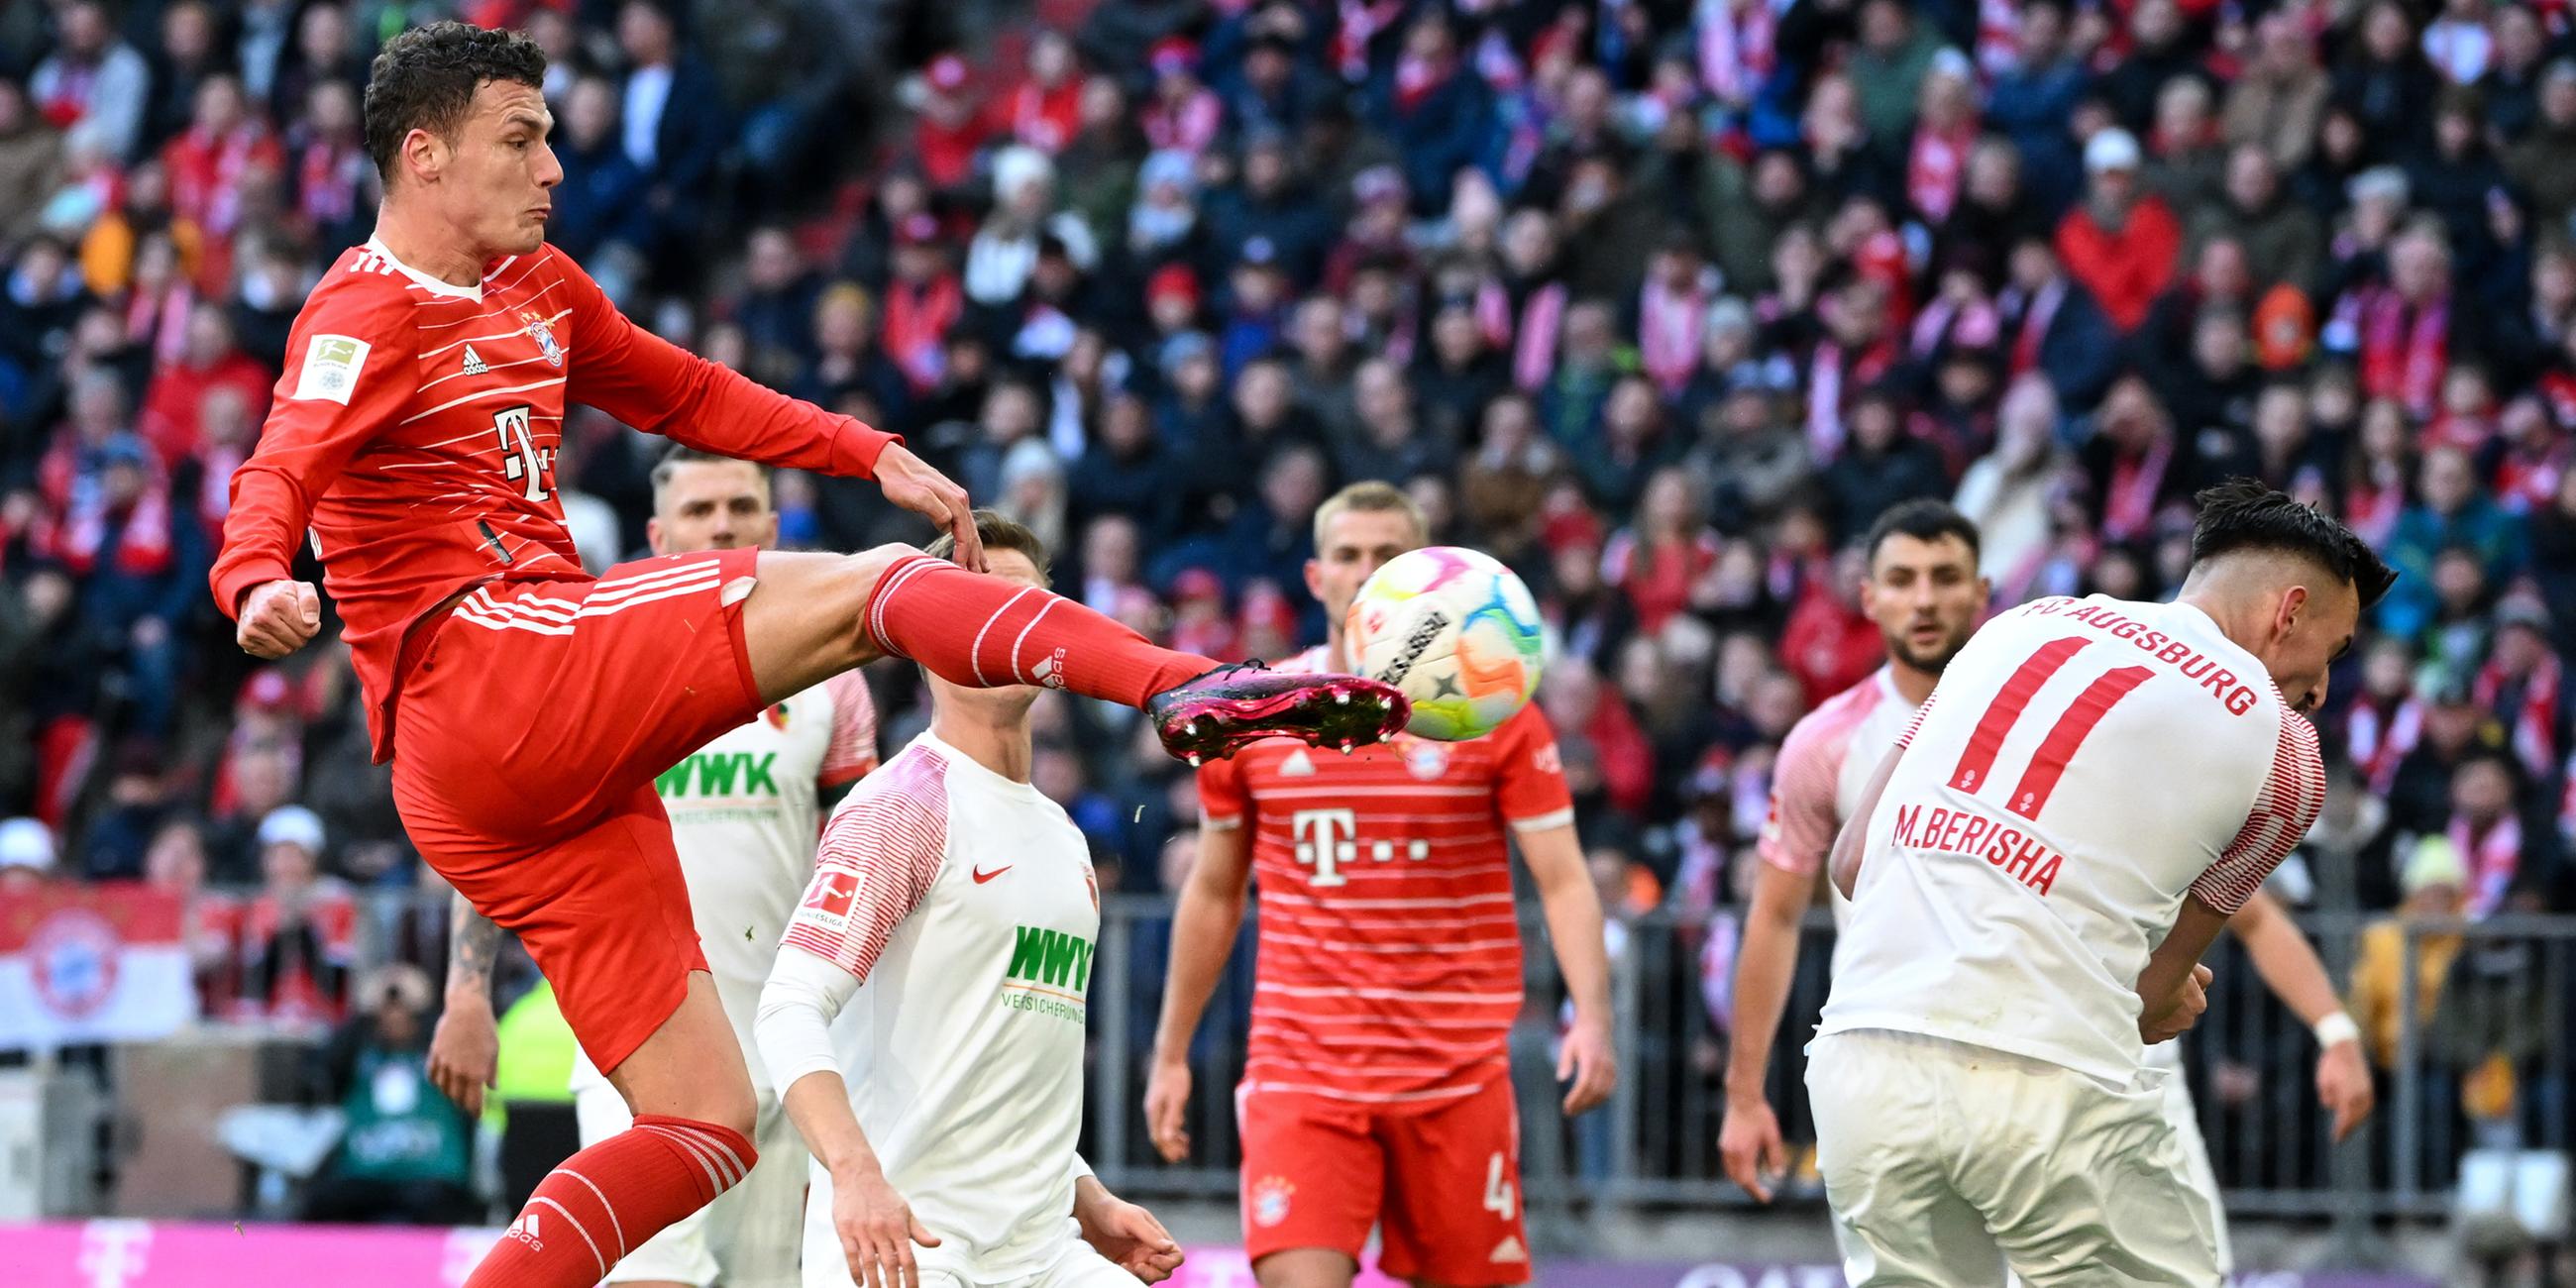 11.03.2023, München: Torschuss zum 3:1 durch Benjamin Pavard (FC Bayern München)